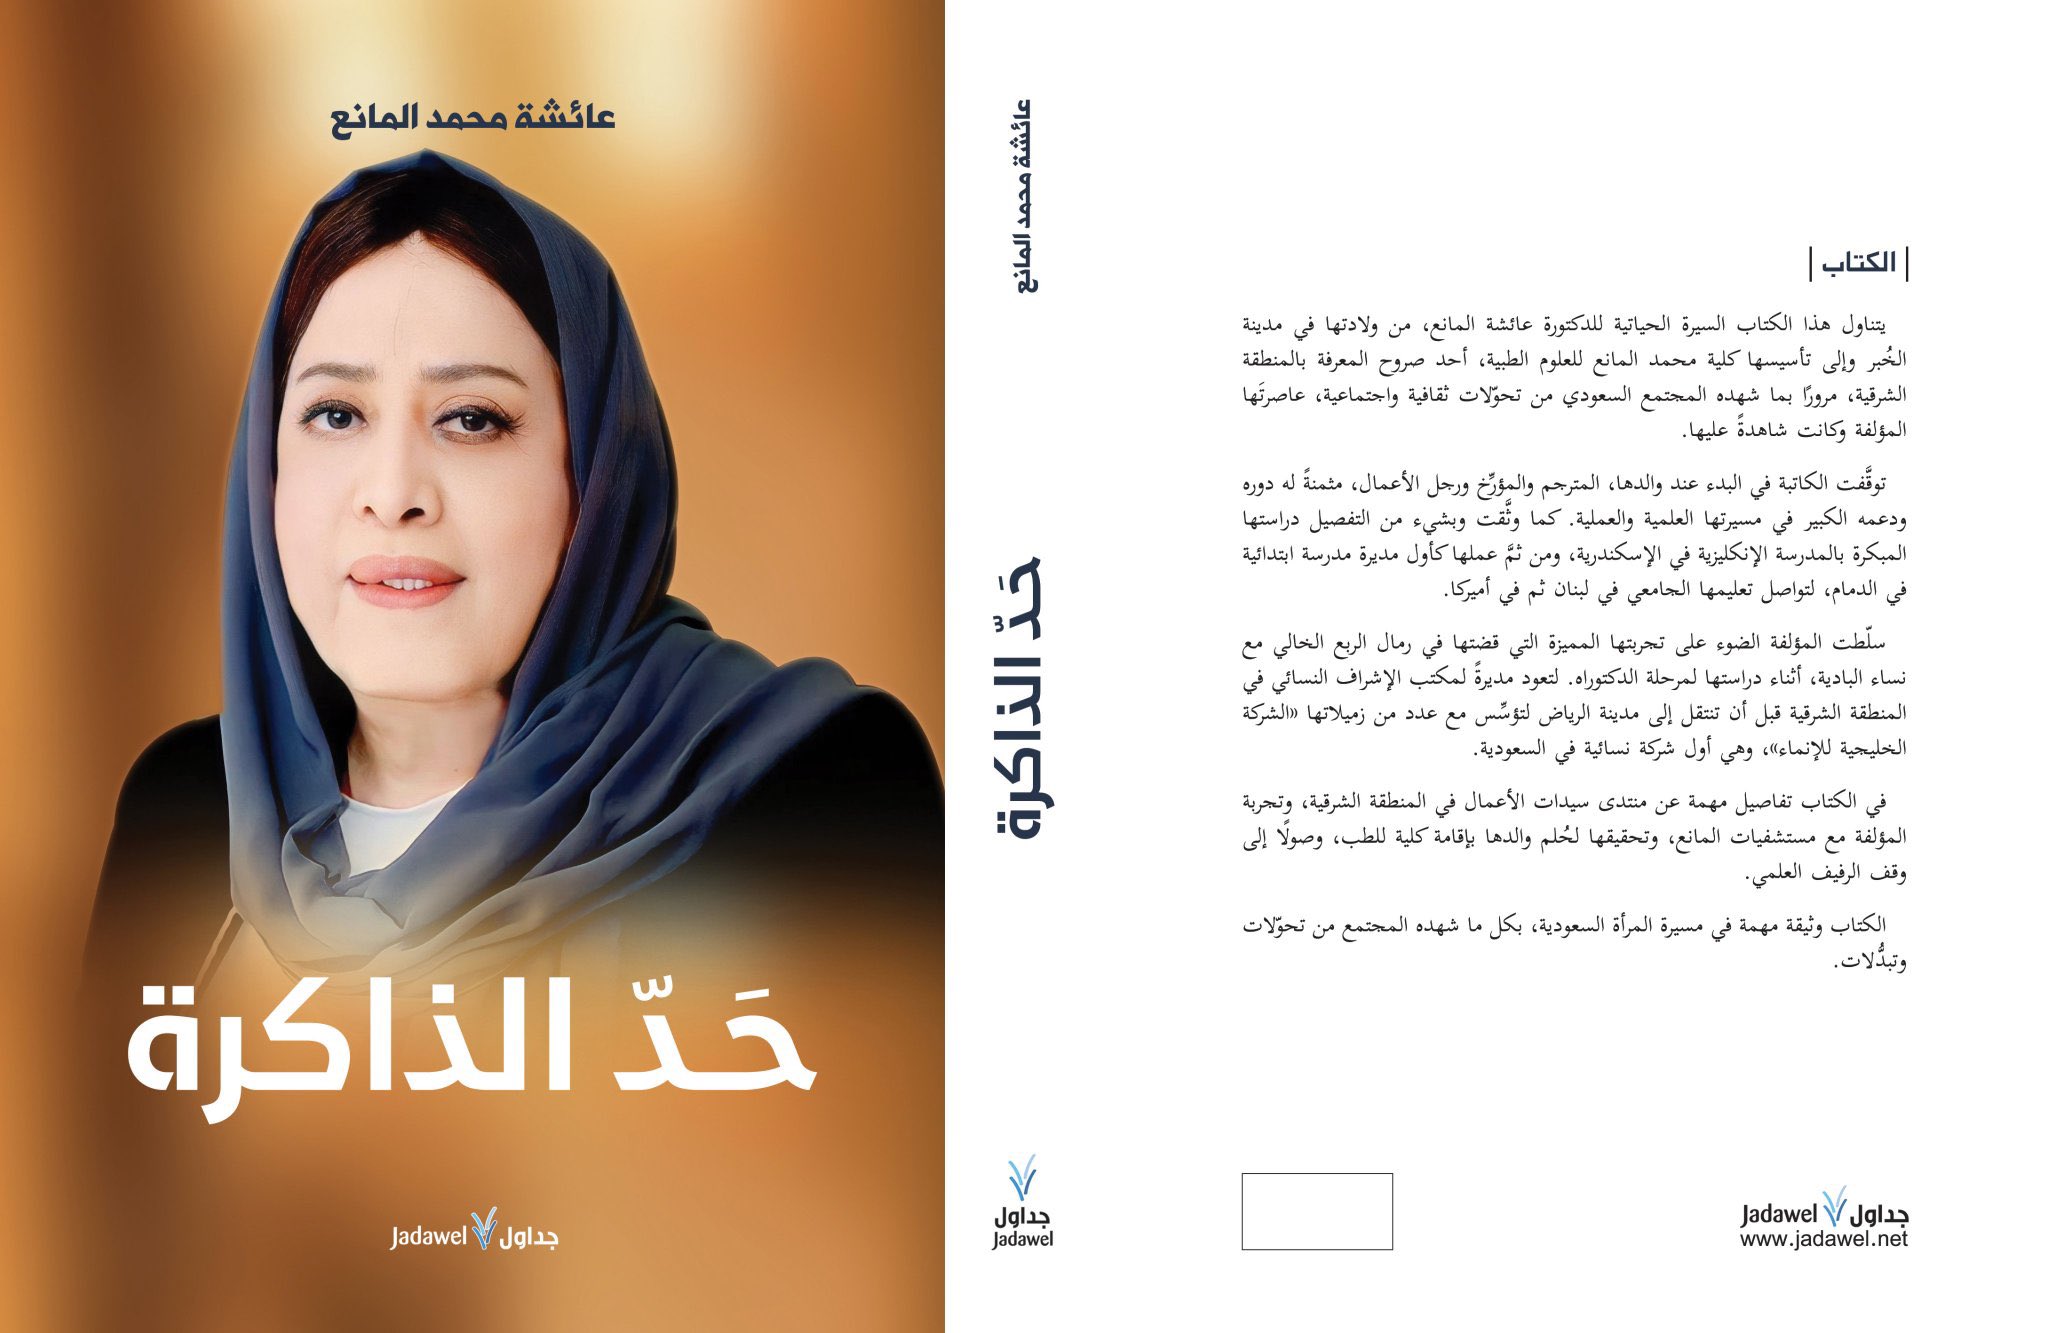 غلاف كتاب "حدَّ الذاكرة" للدكتورة عائشة المانع